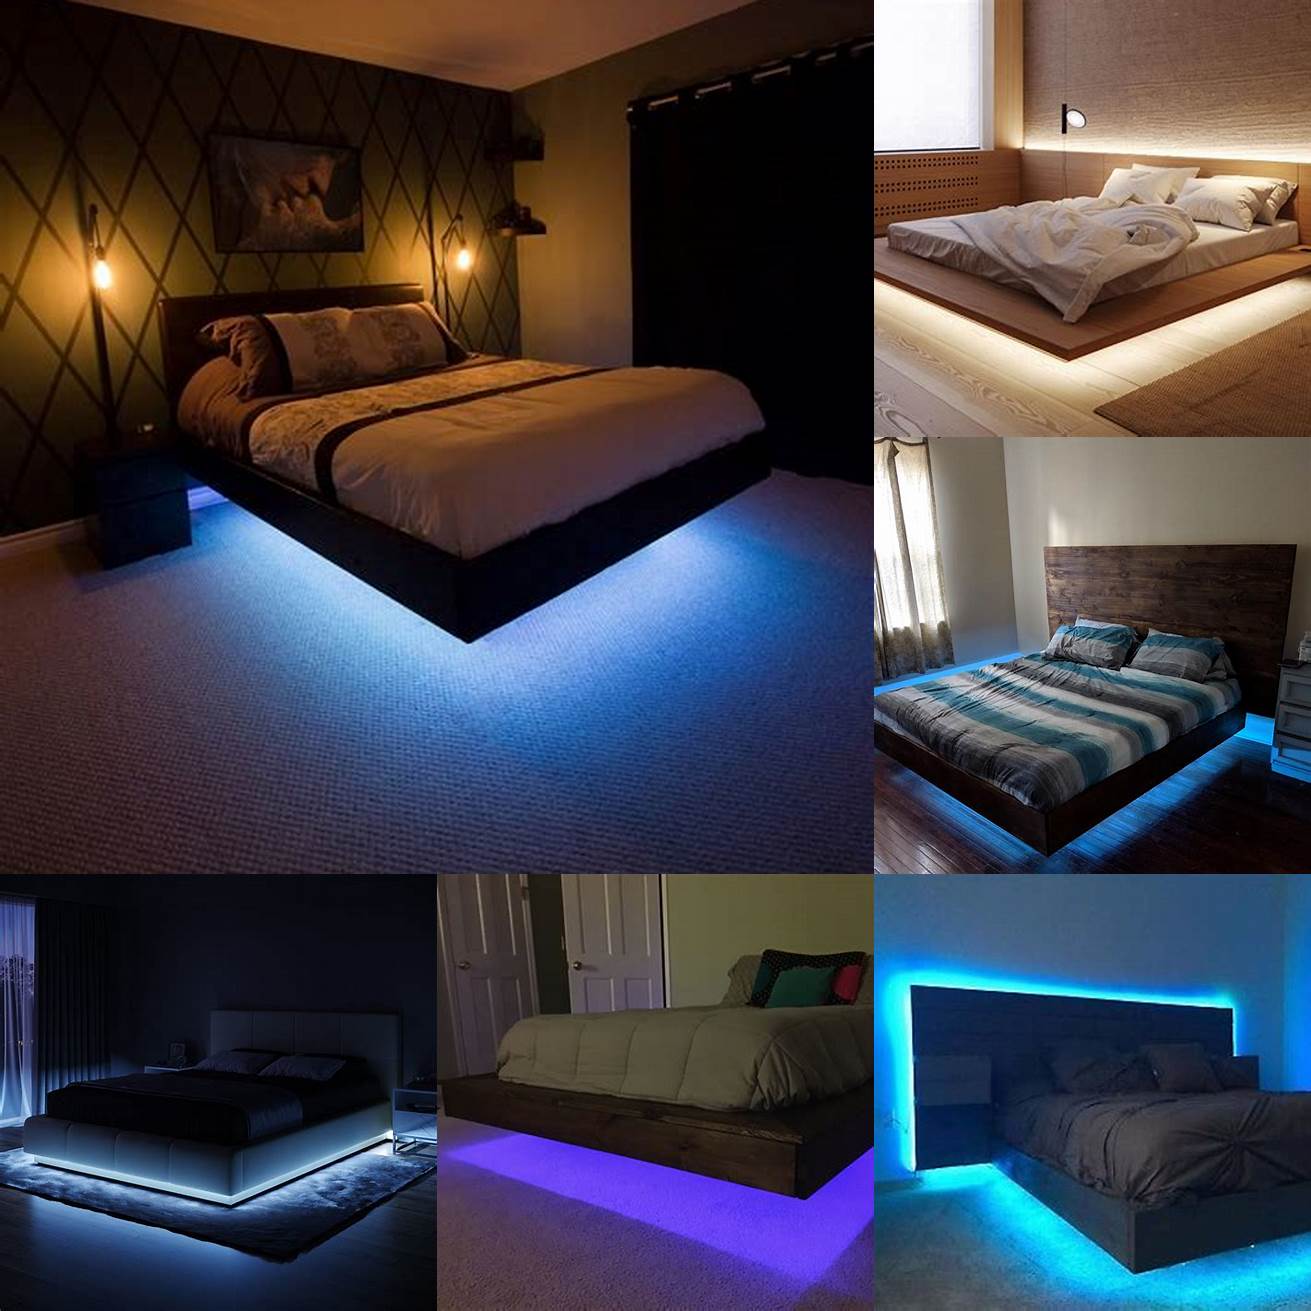 Floating platform bed with LED lighting